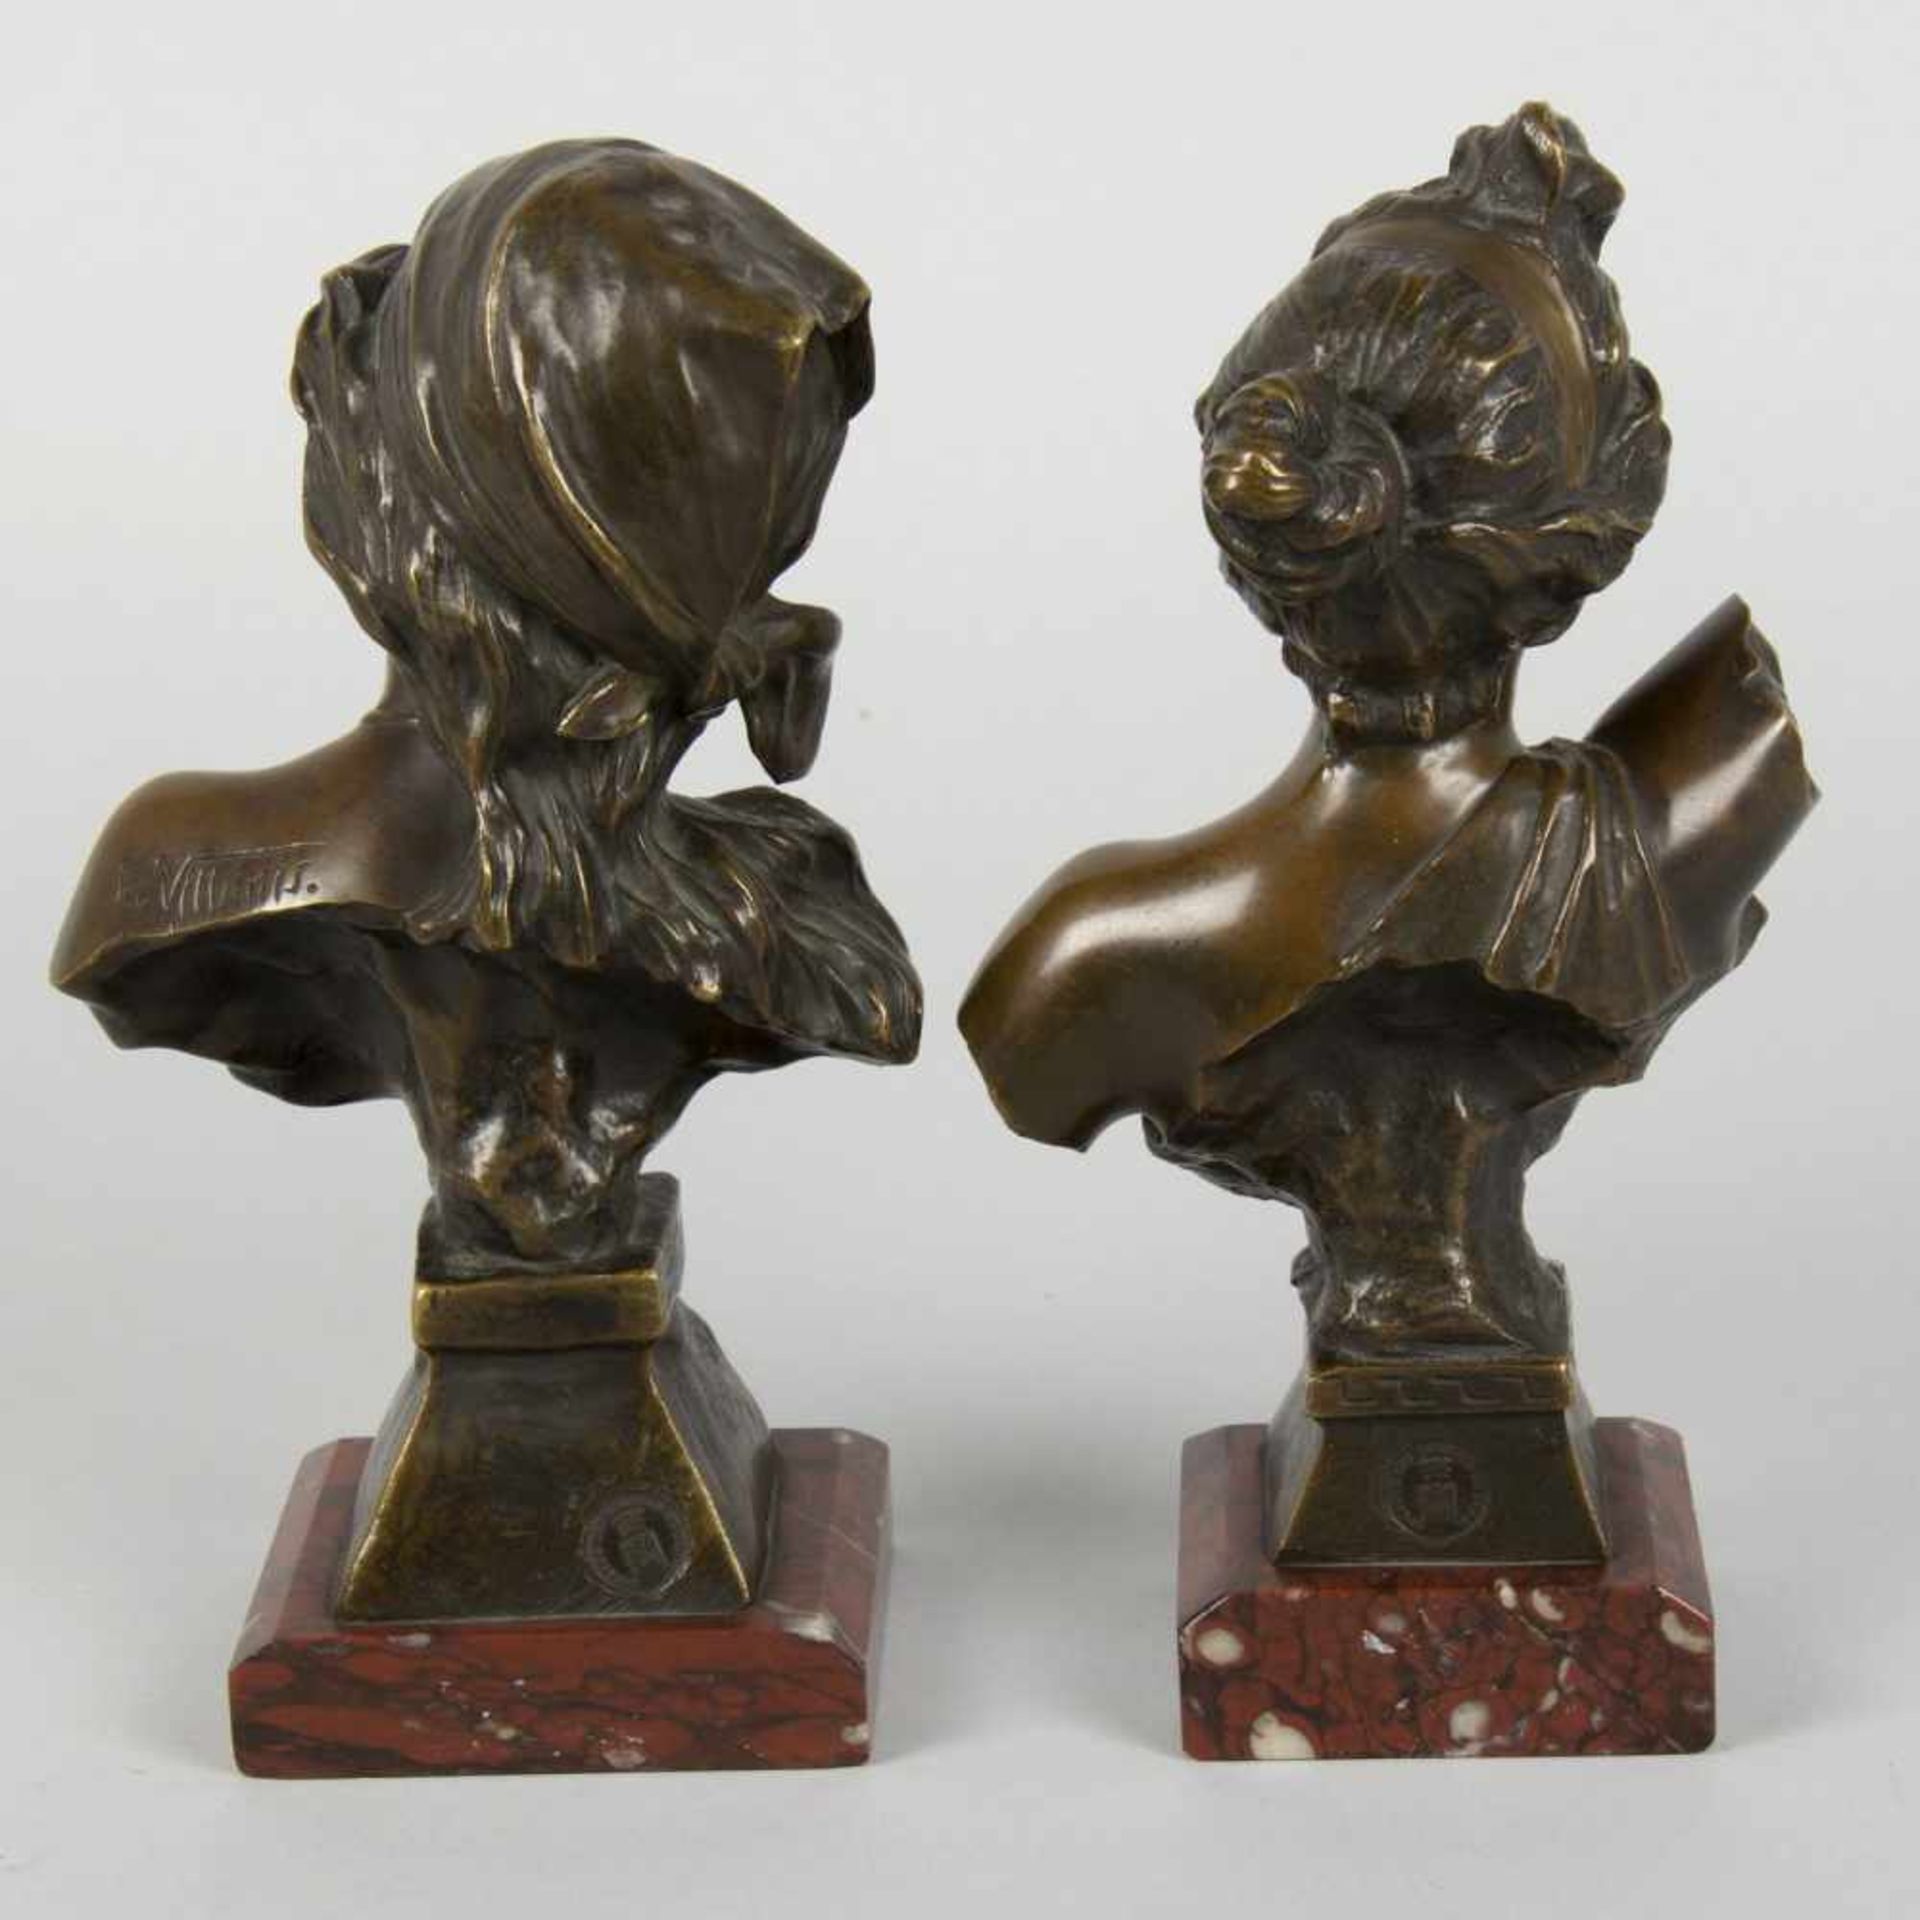 Villanis, Emmanuel. 1858 Lille - Paris 1914Thais und Saida. 2 Bronzen, grün-braun patiniert. Sign. - Bild 2 aus 4